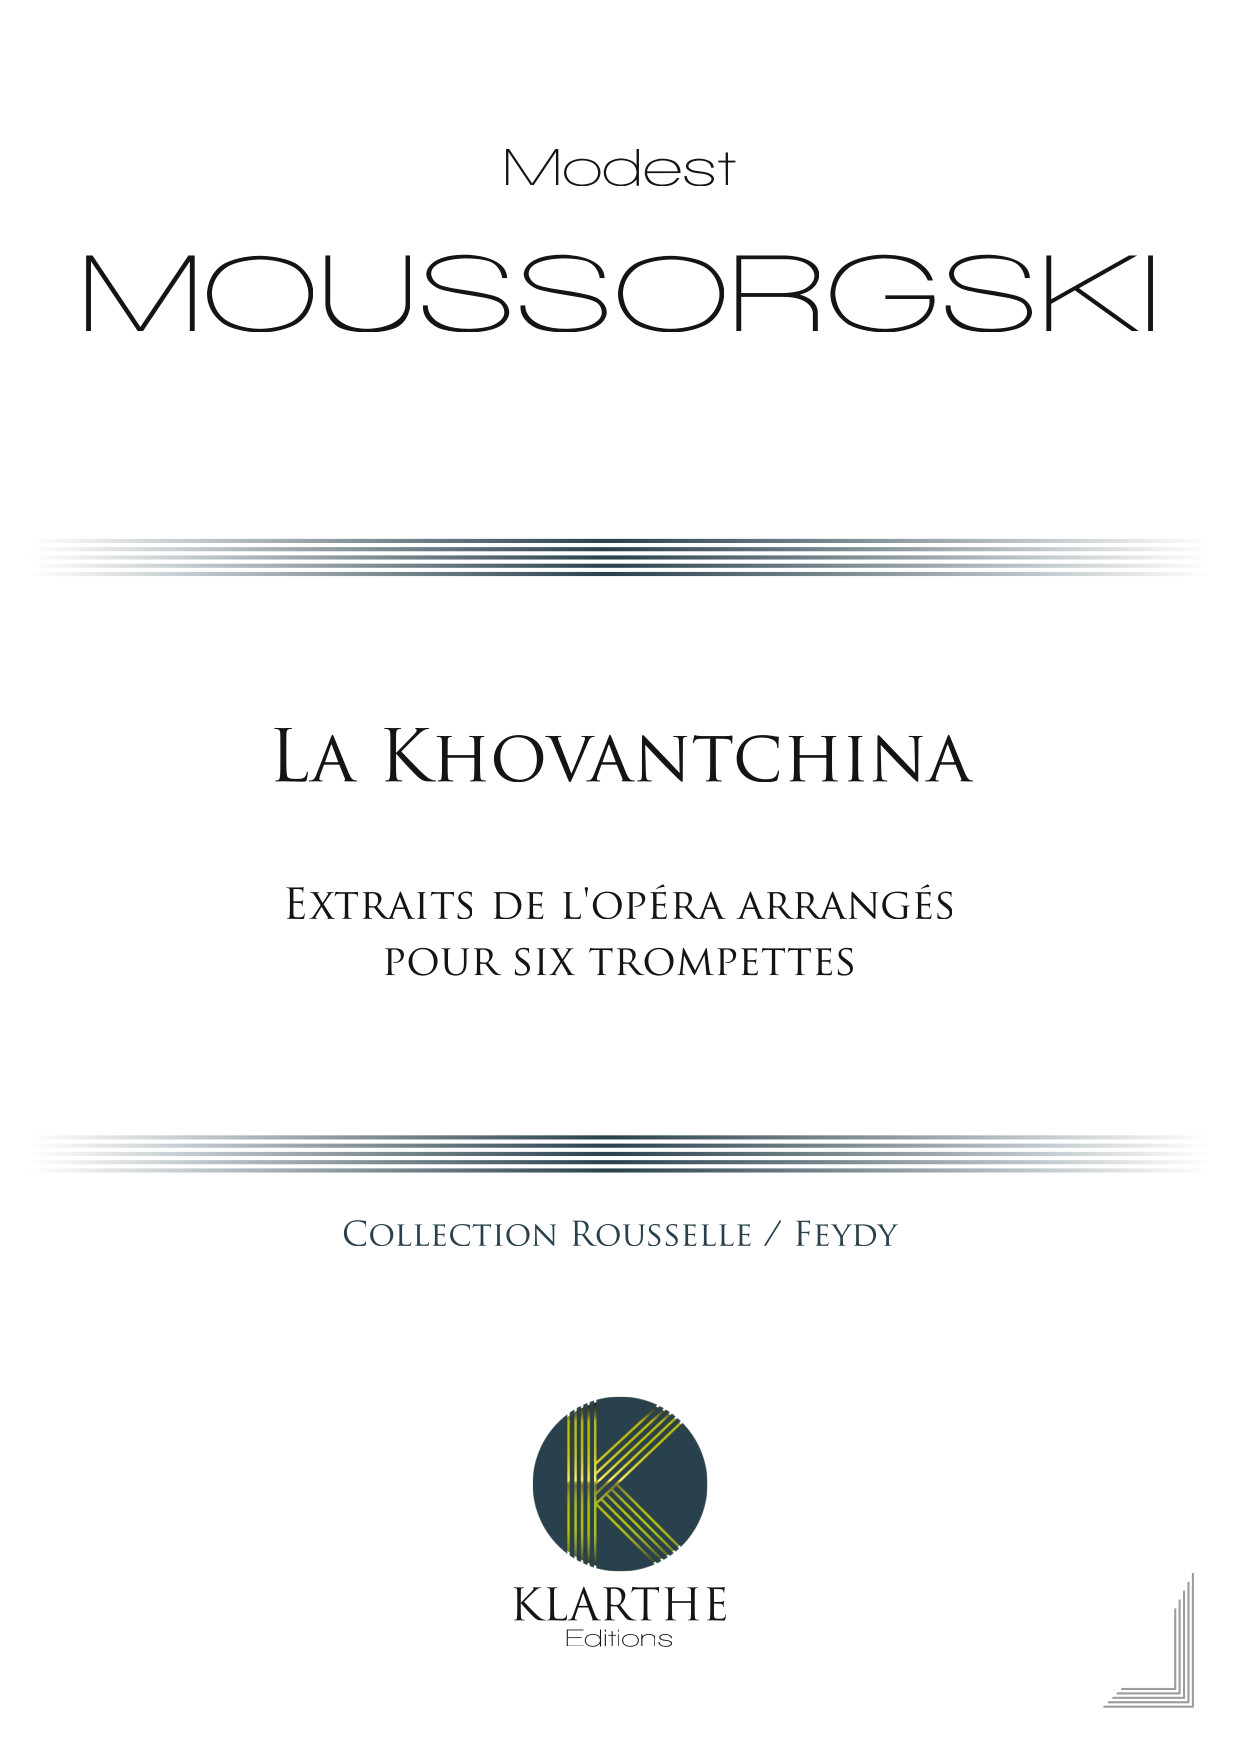 La Khovantchina (MOUSSORGSKI MODESTE)